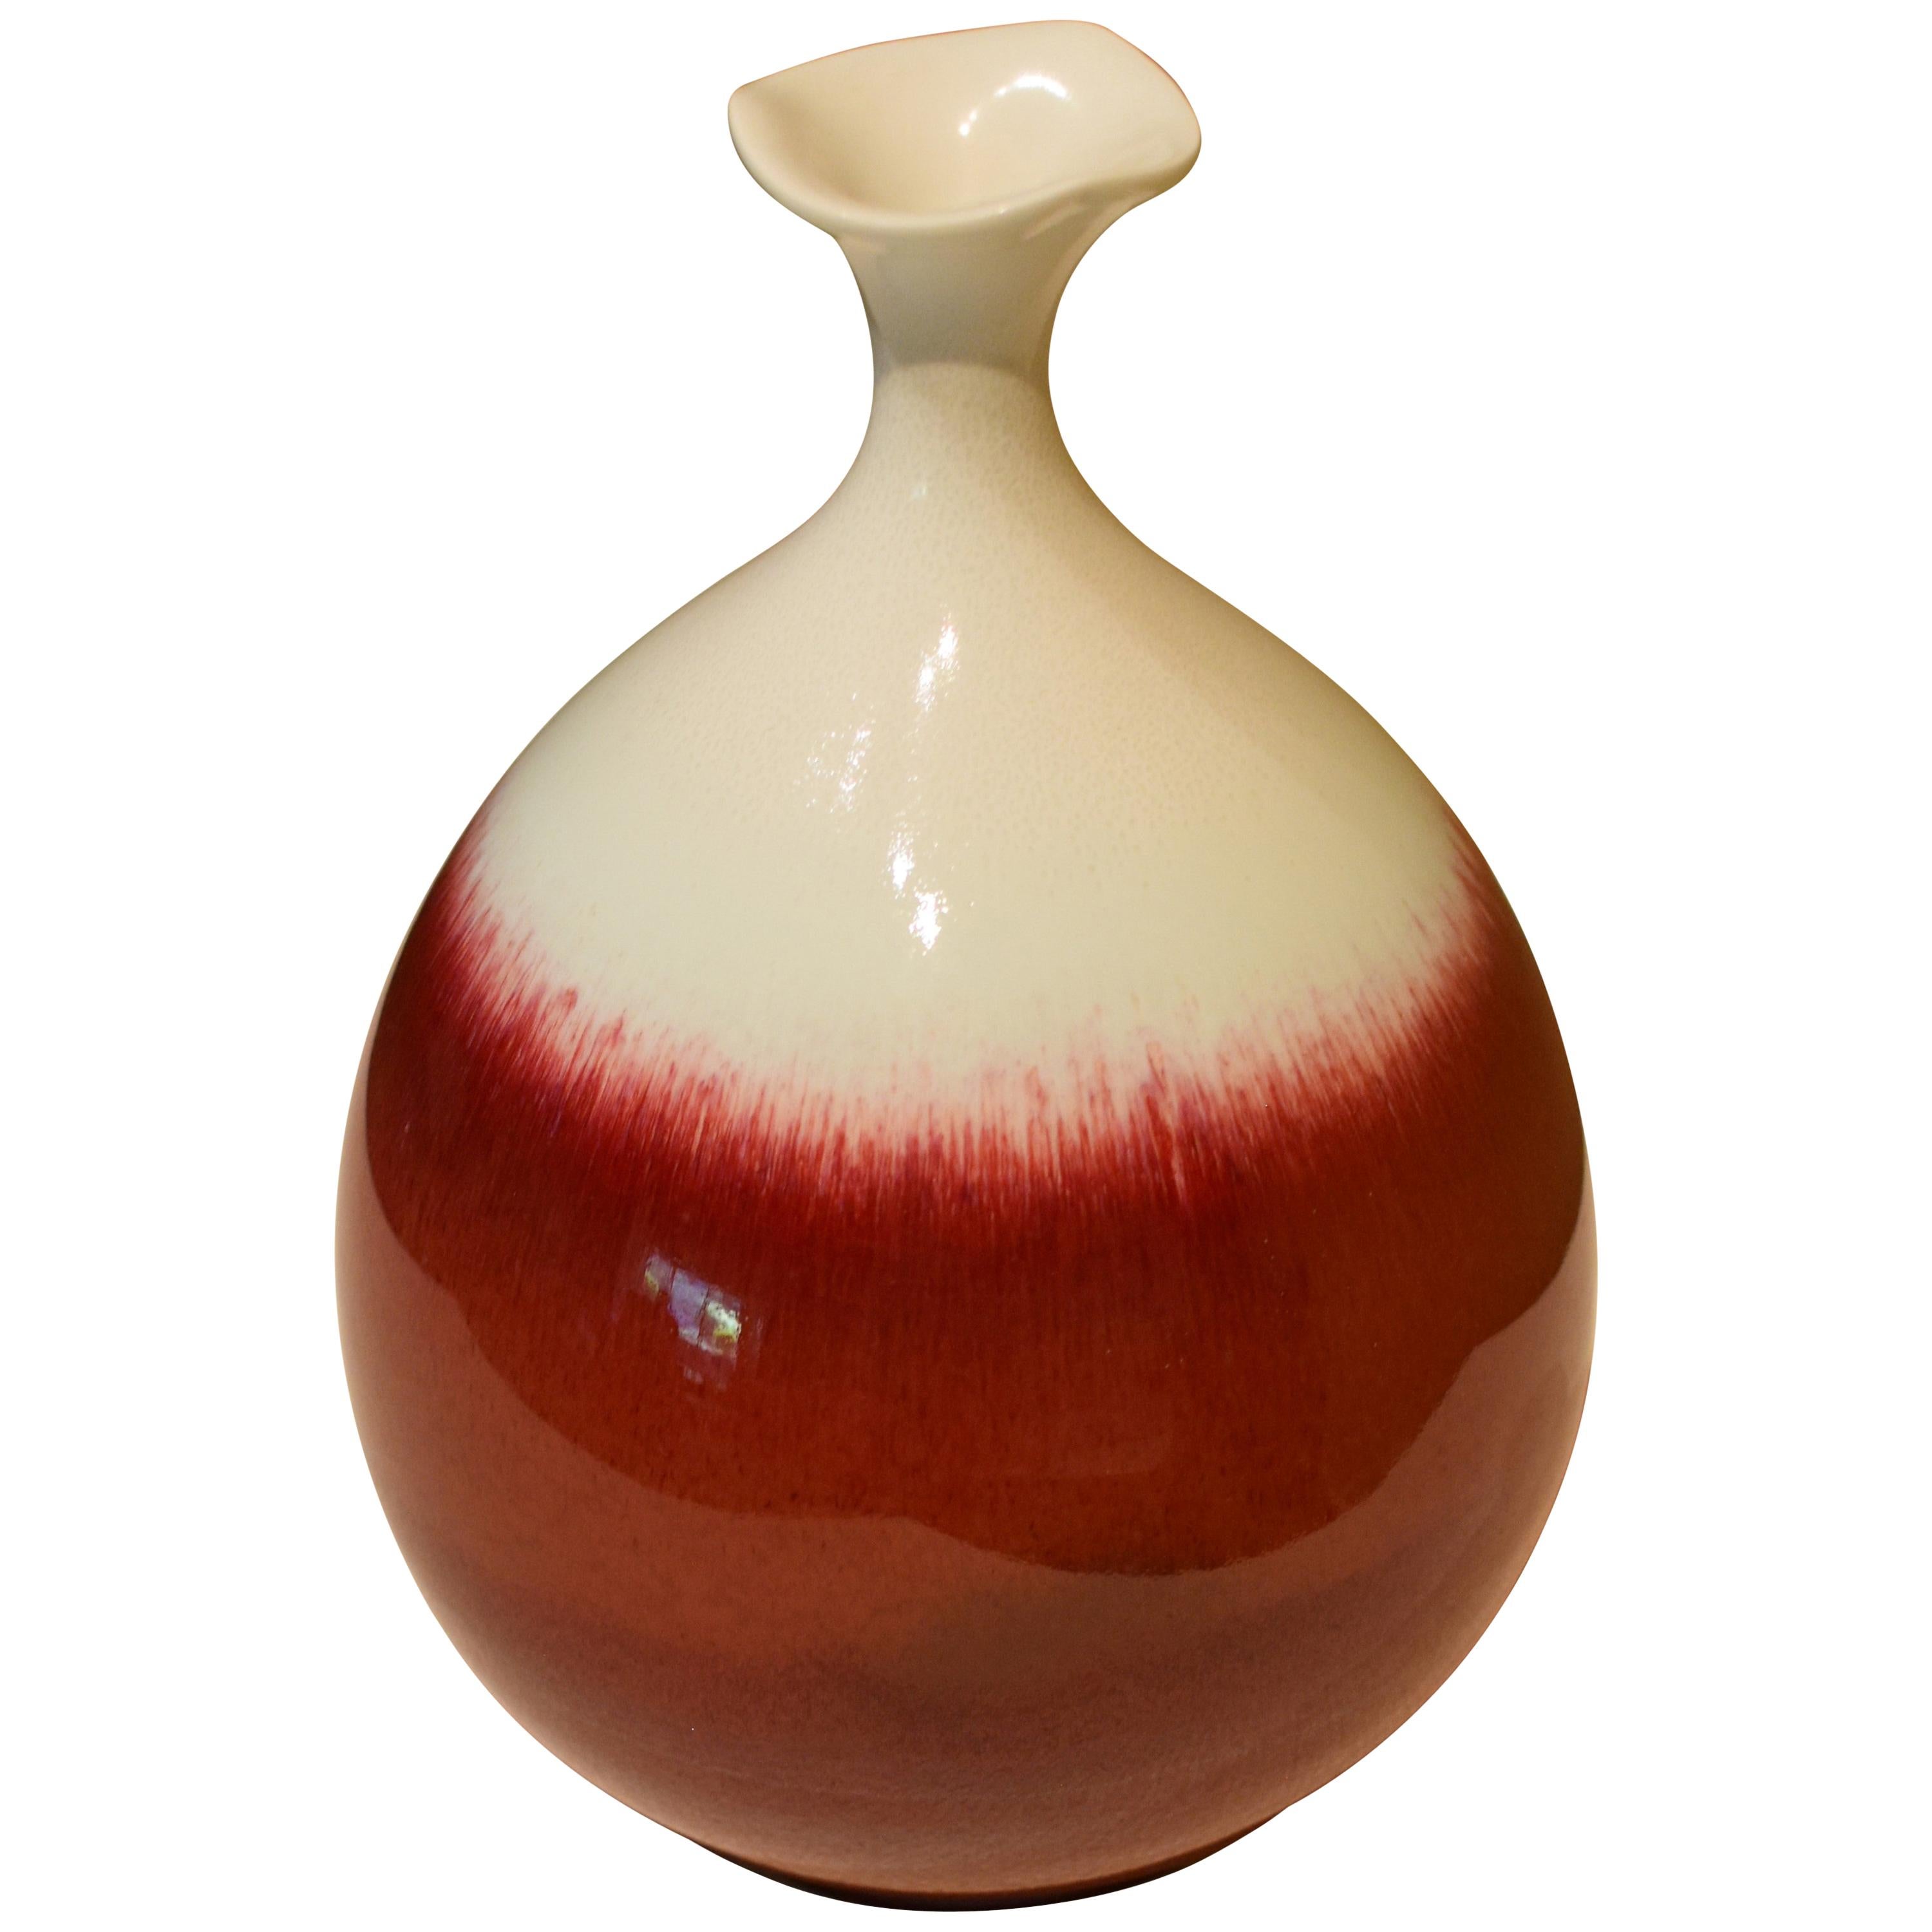 Japanese Red White Hand-Glazed Porcelain Vase by Master Artist For Sale